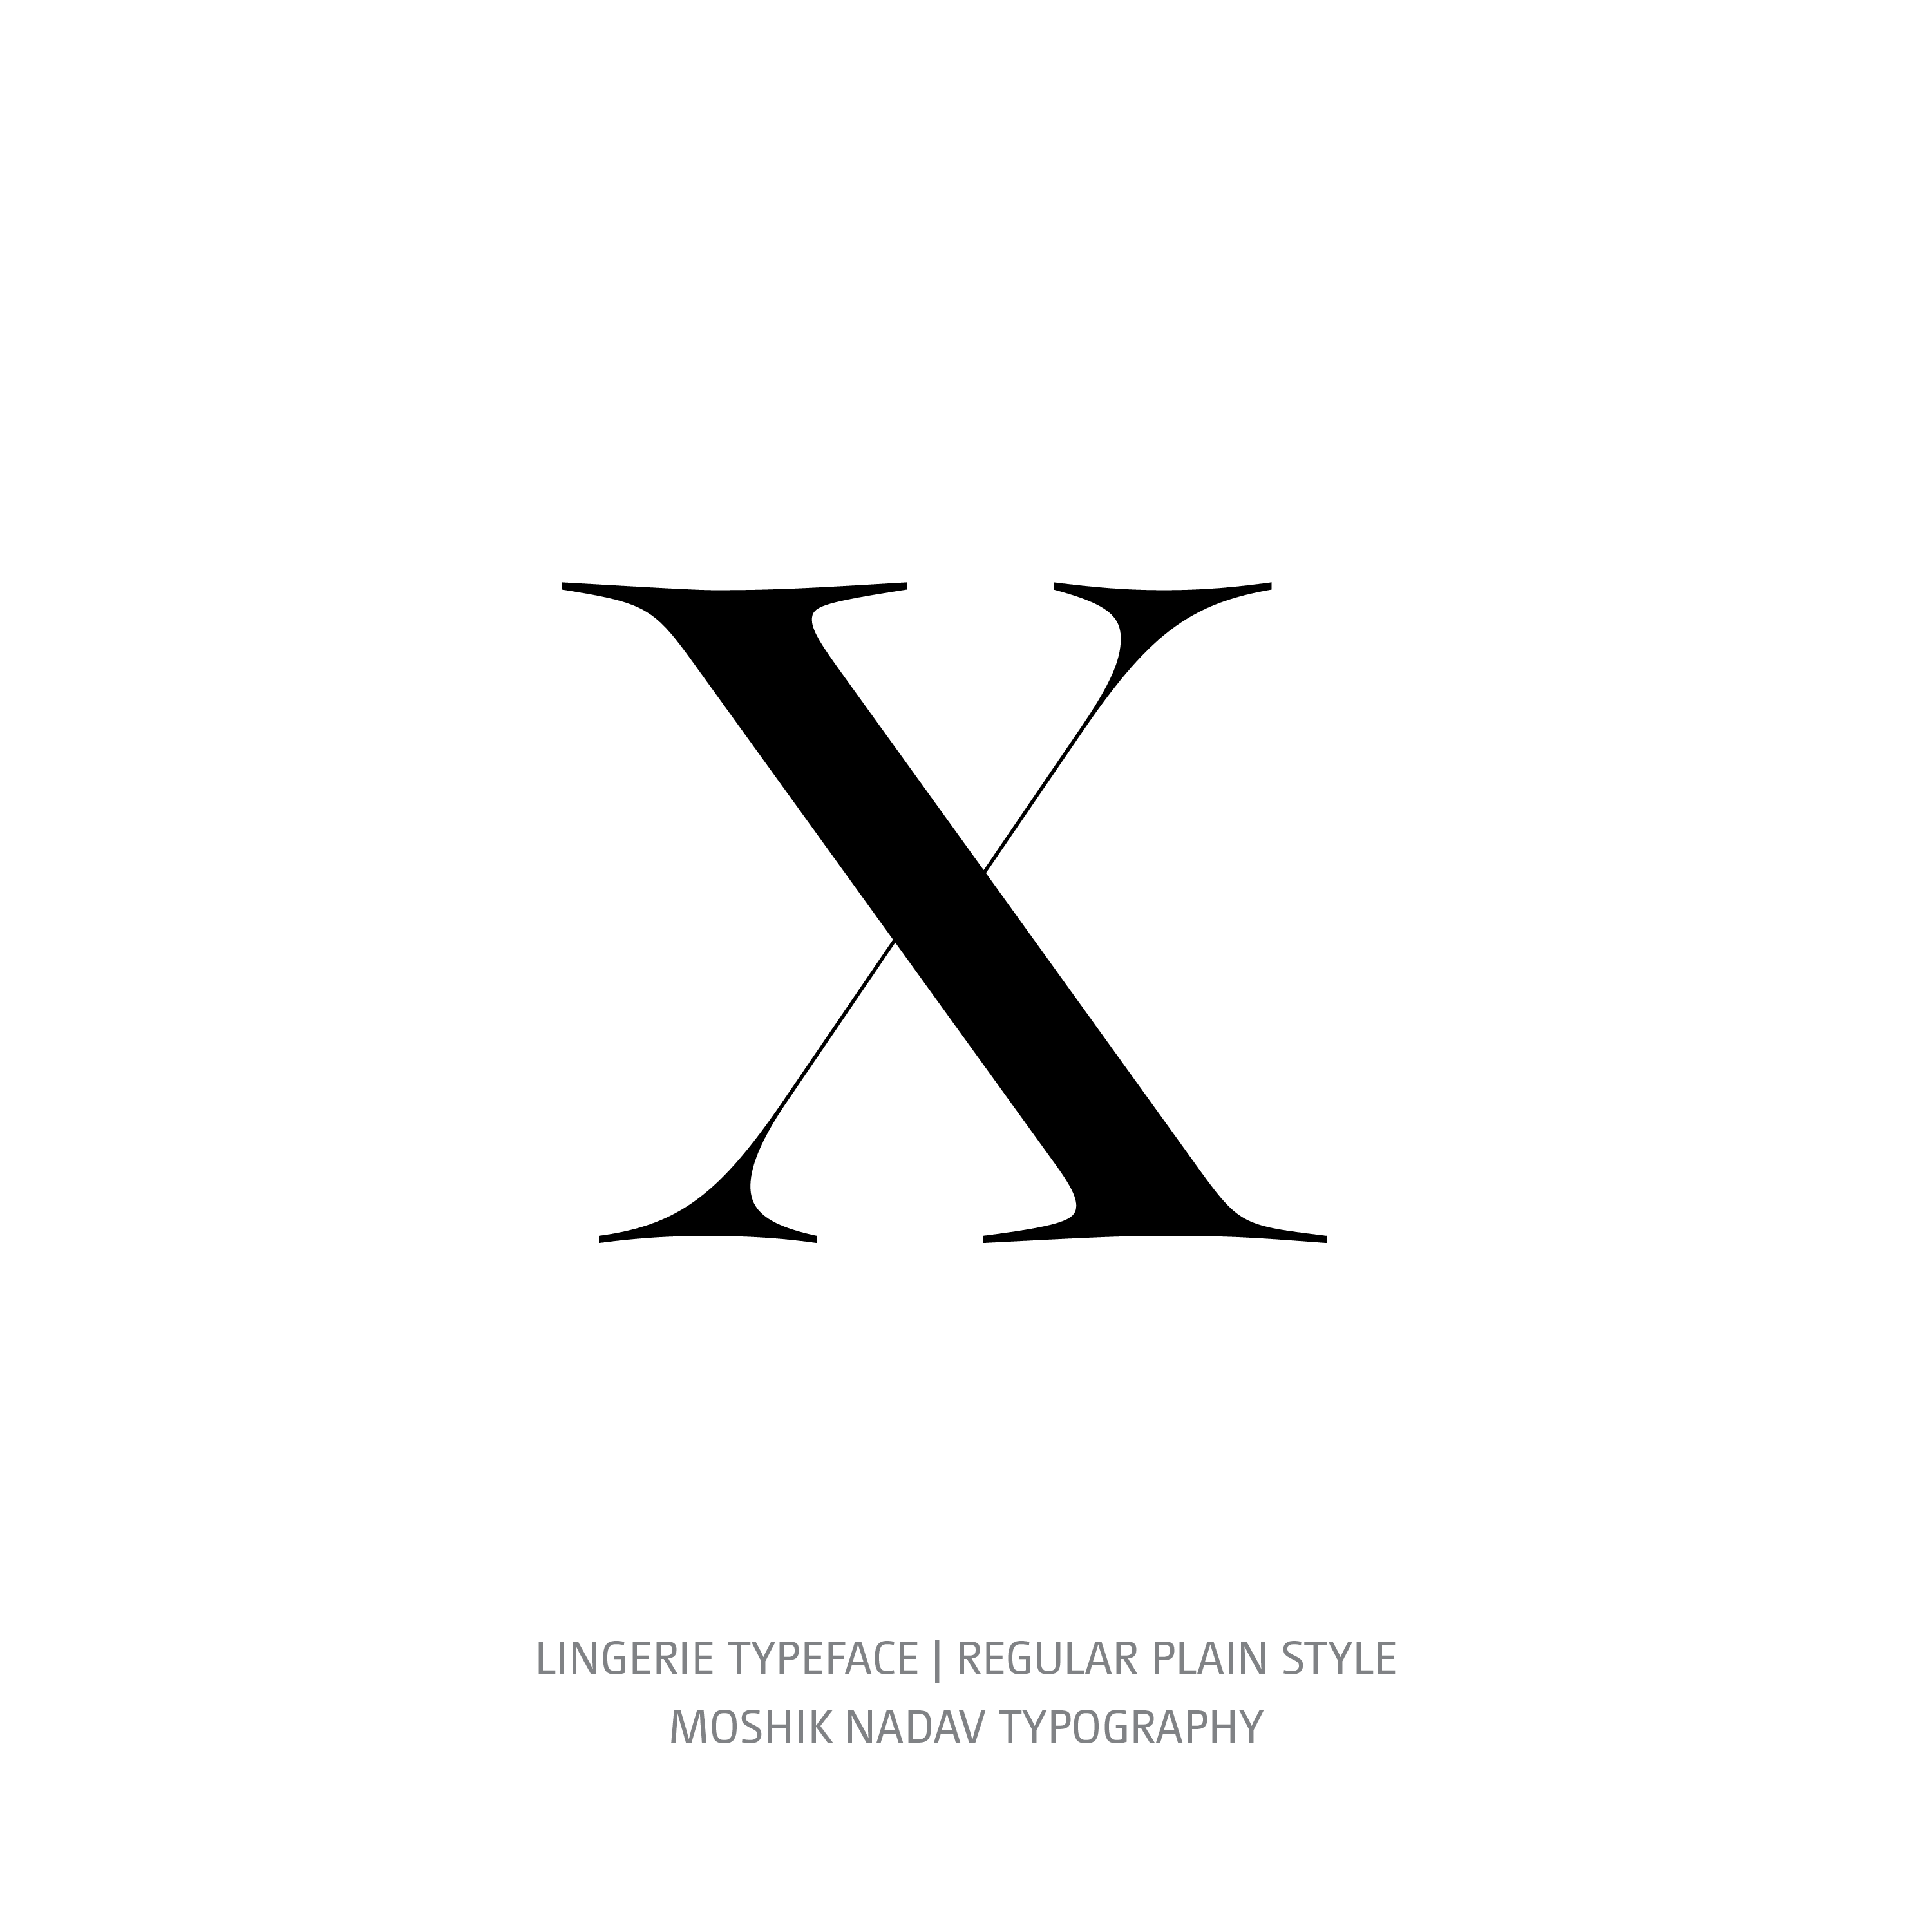 Lingerie Typeface Regular Plain x